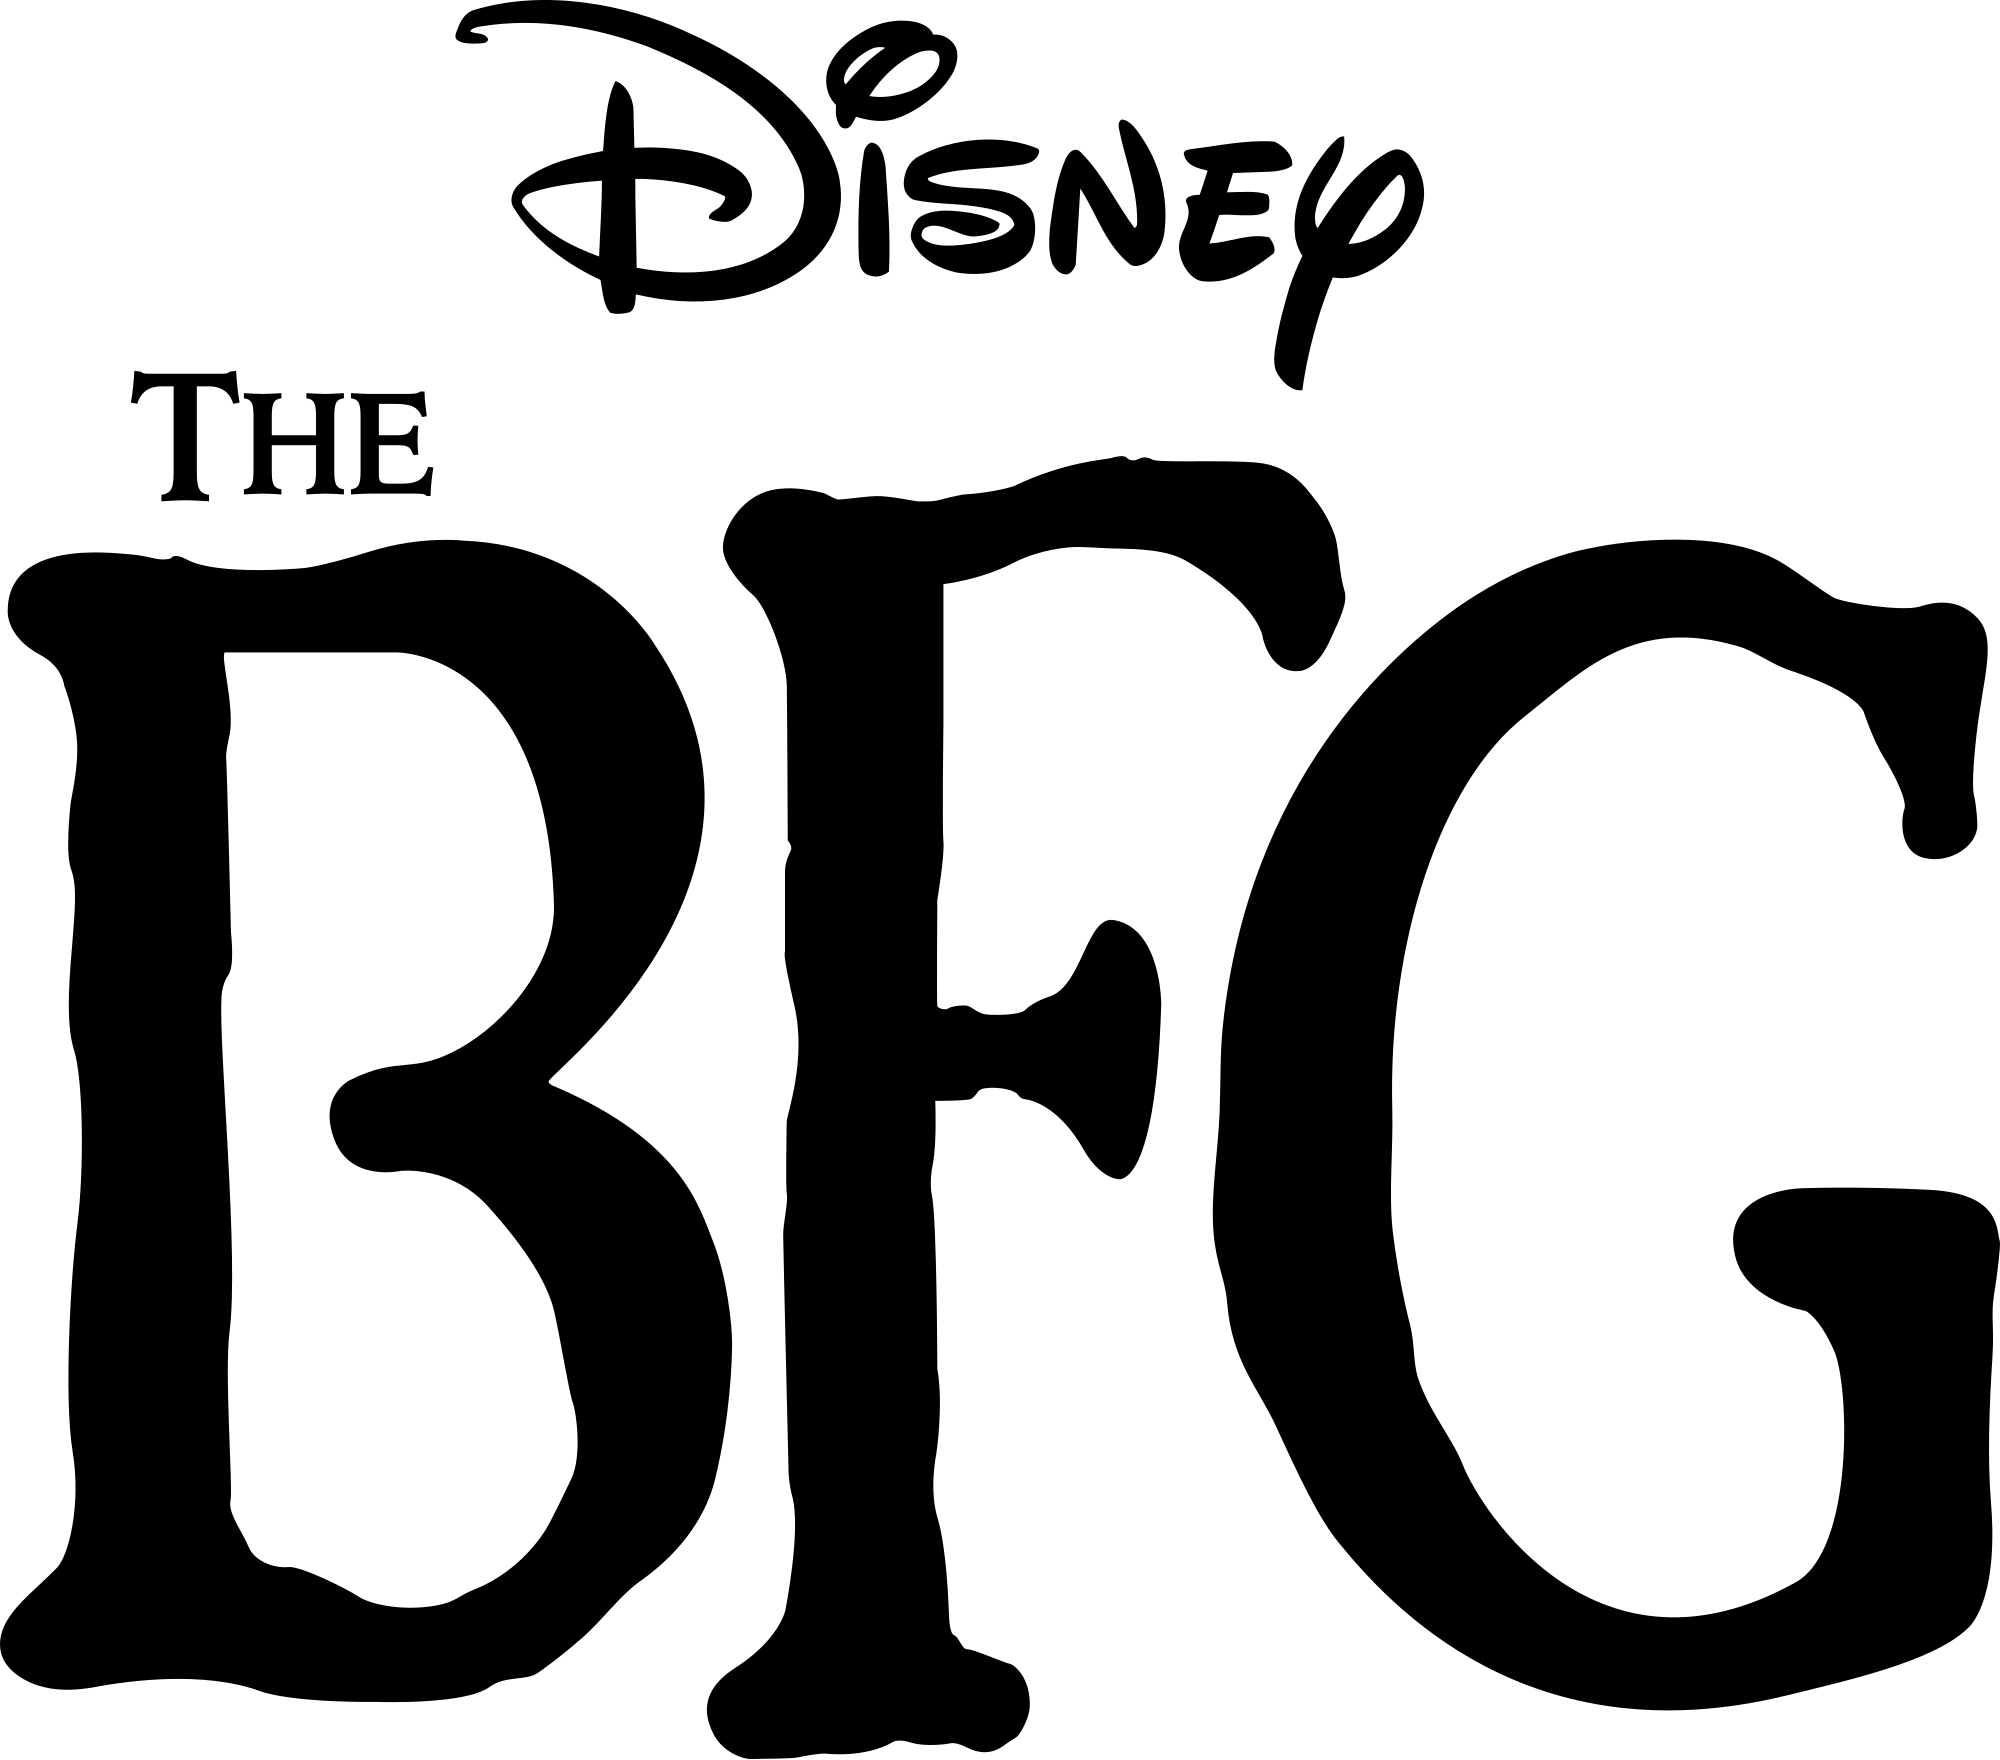 BFG Logo - The BFG (2016 film) logo.svg